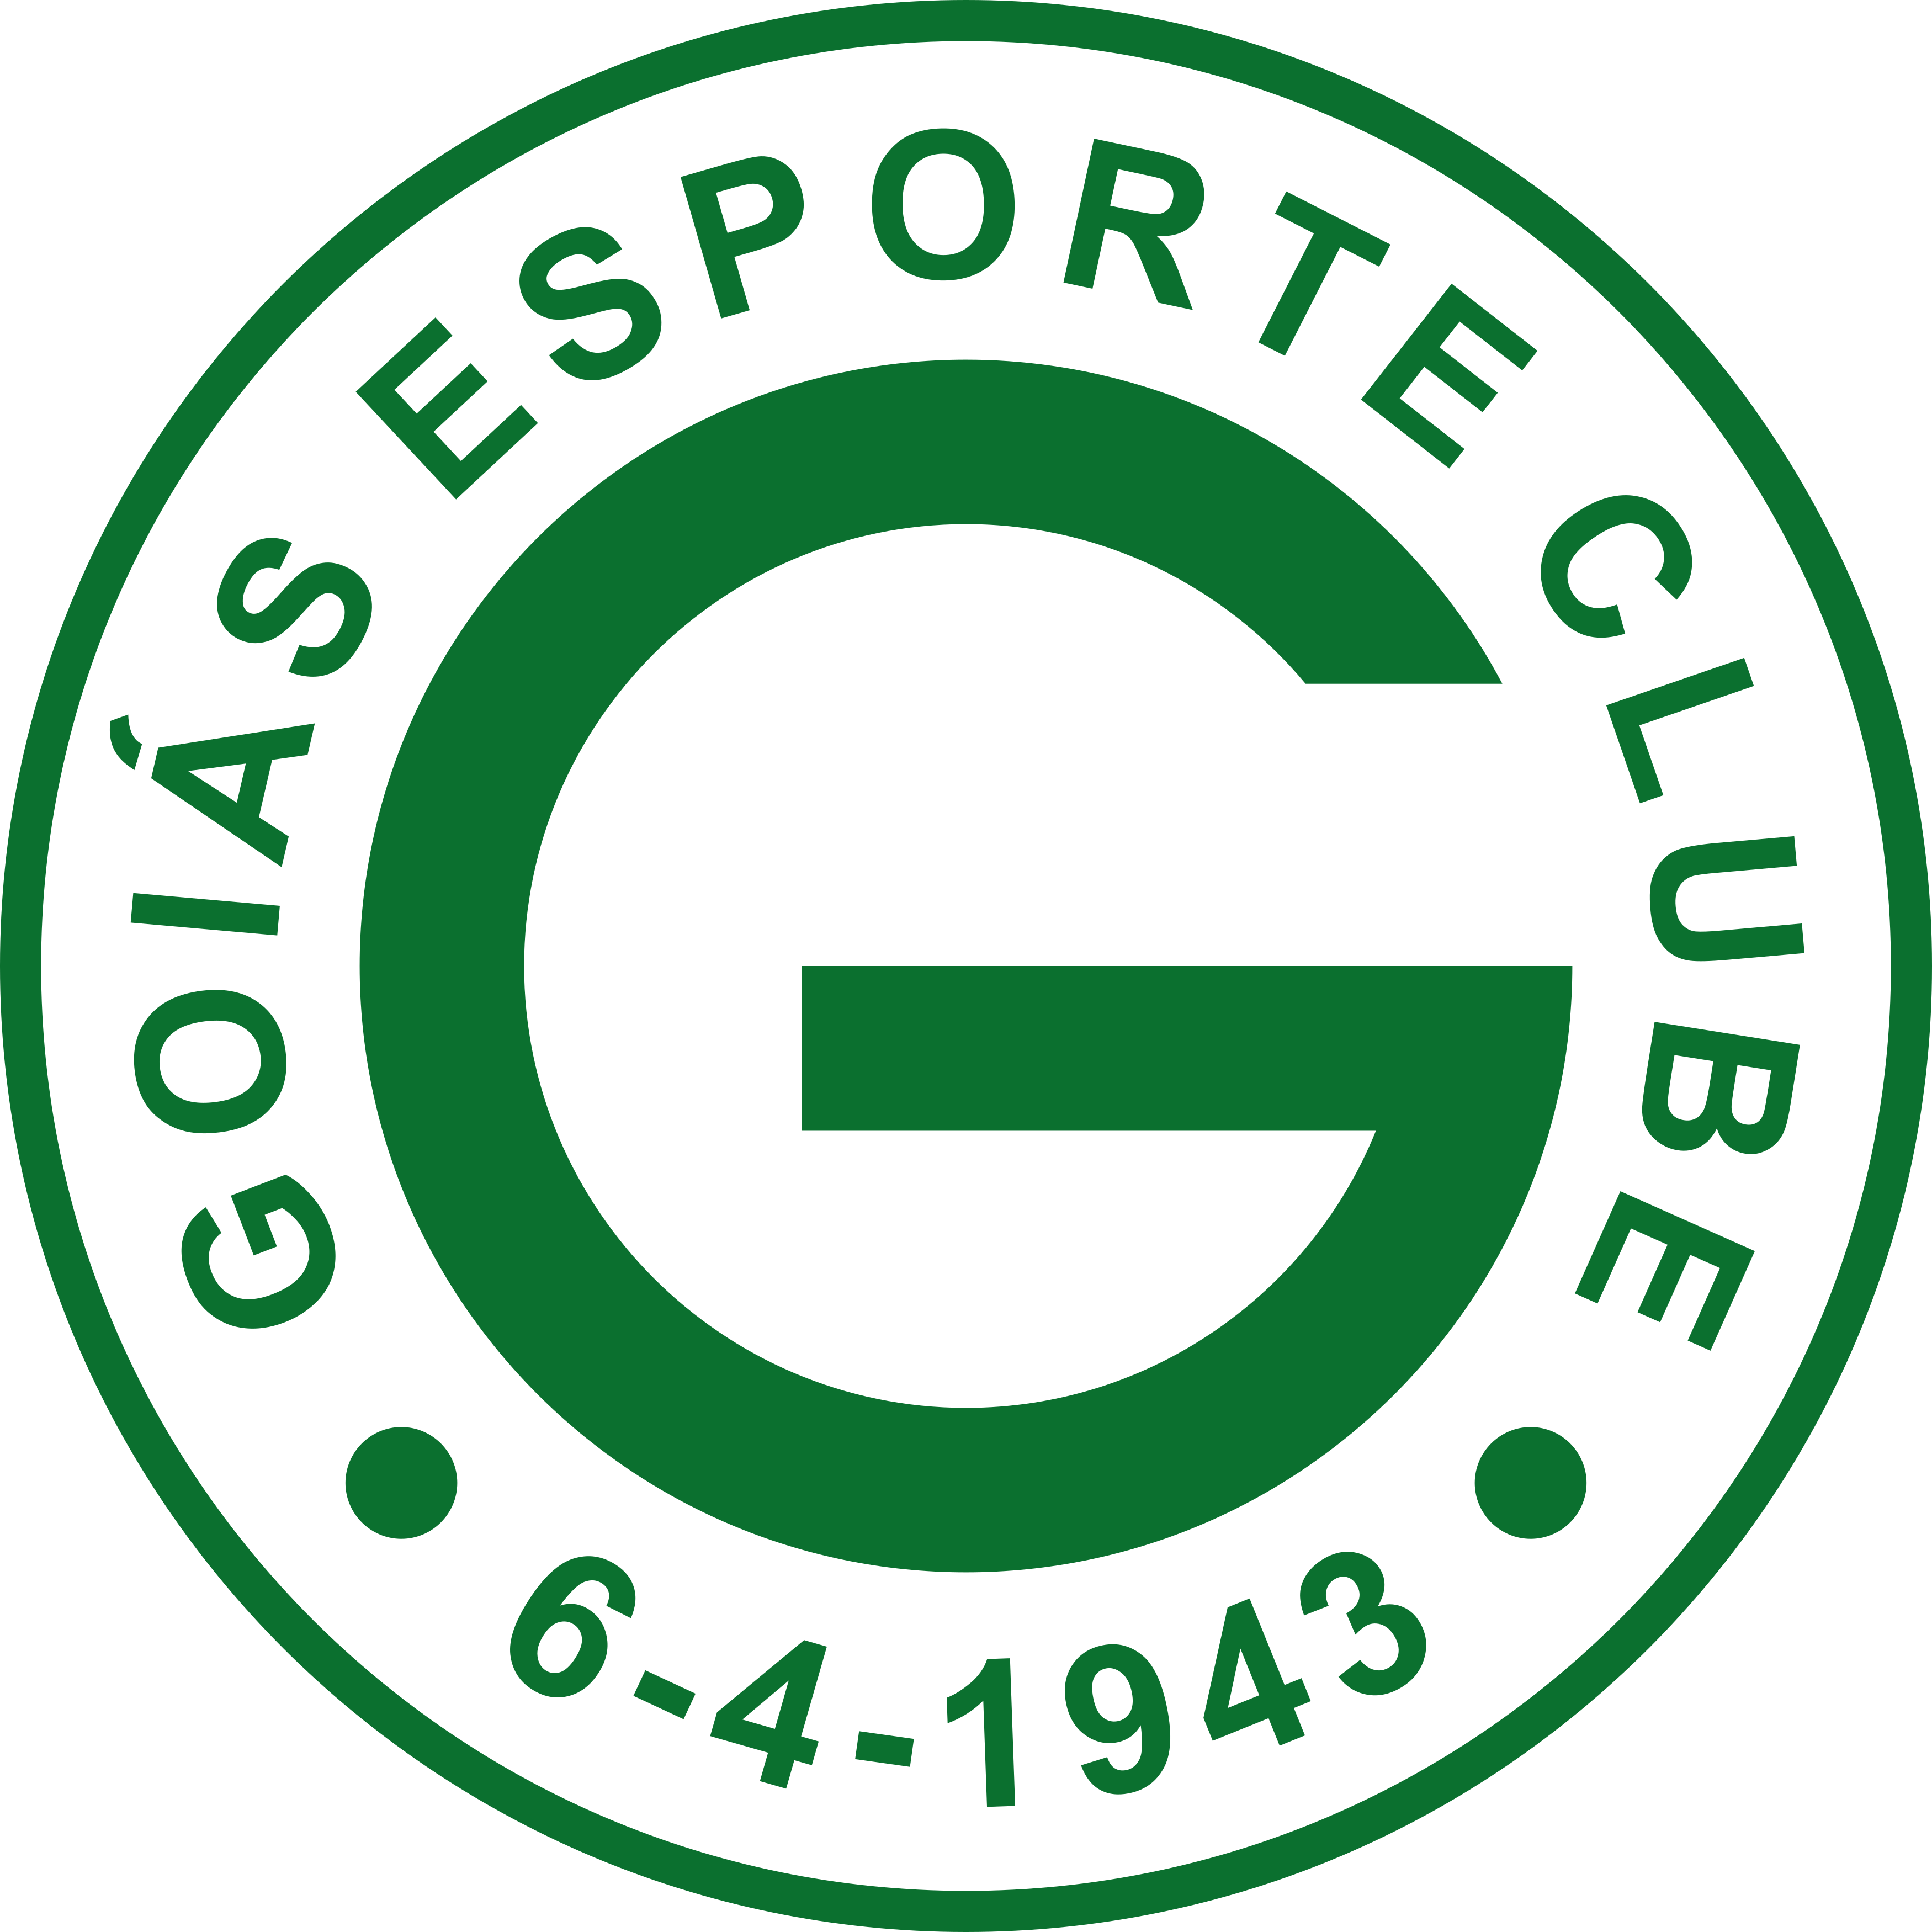 Treinador do Goiás Esporte Clube